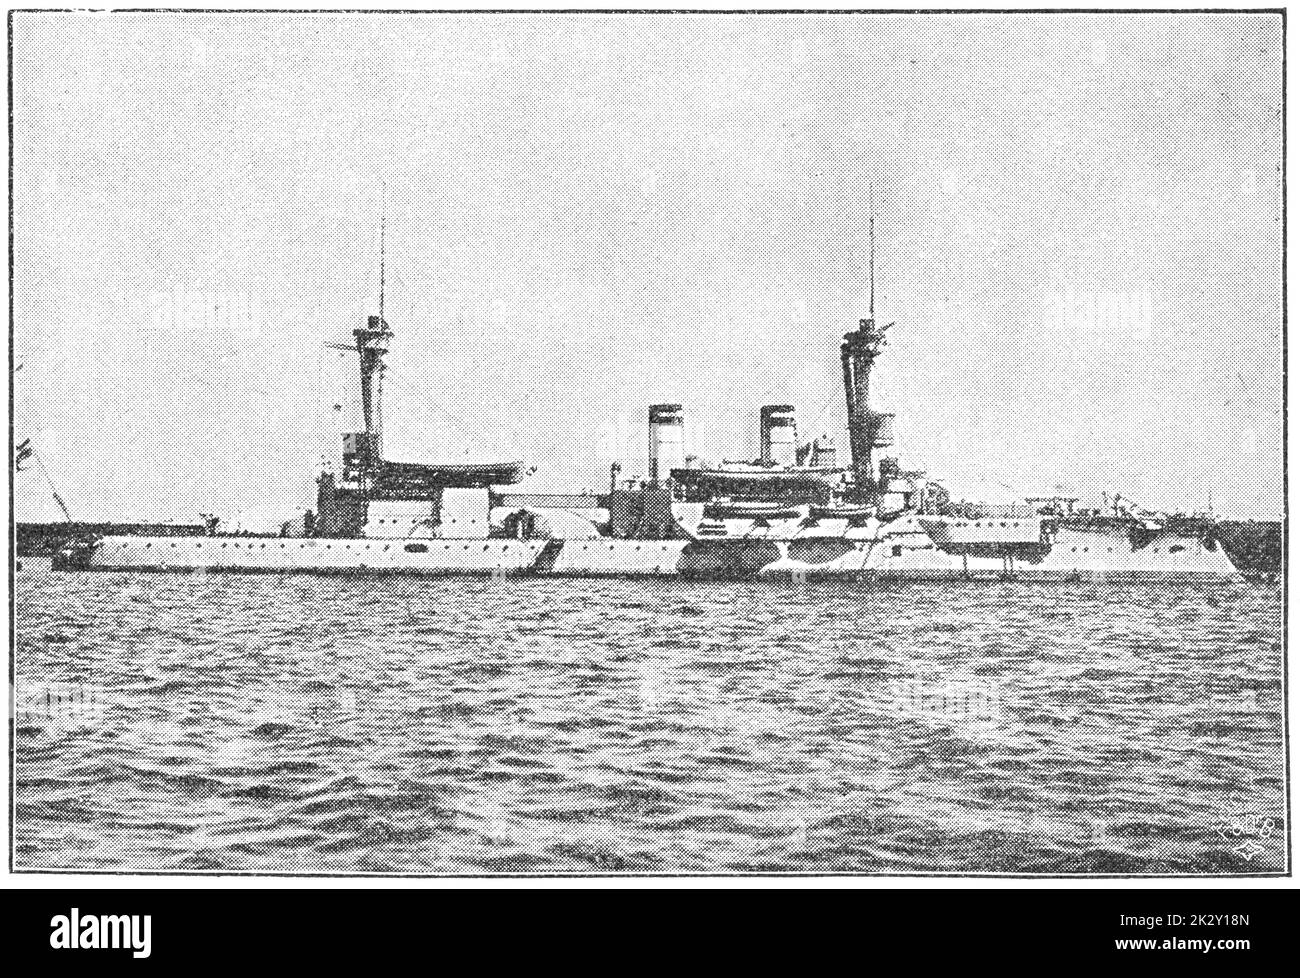 SMS Brandeburgo (1891) - el buque principal de los acorazados pre-temnought de la clase Brandeburgo, construido para la marina alemana Kaiserliche (Armada Imperial). Ilustración del siglo 19. Alemania. Fondo blanco. Foto de stock